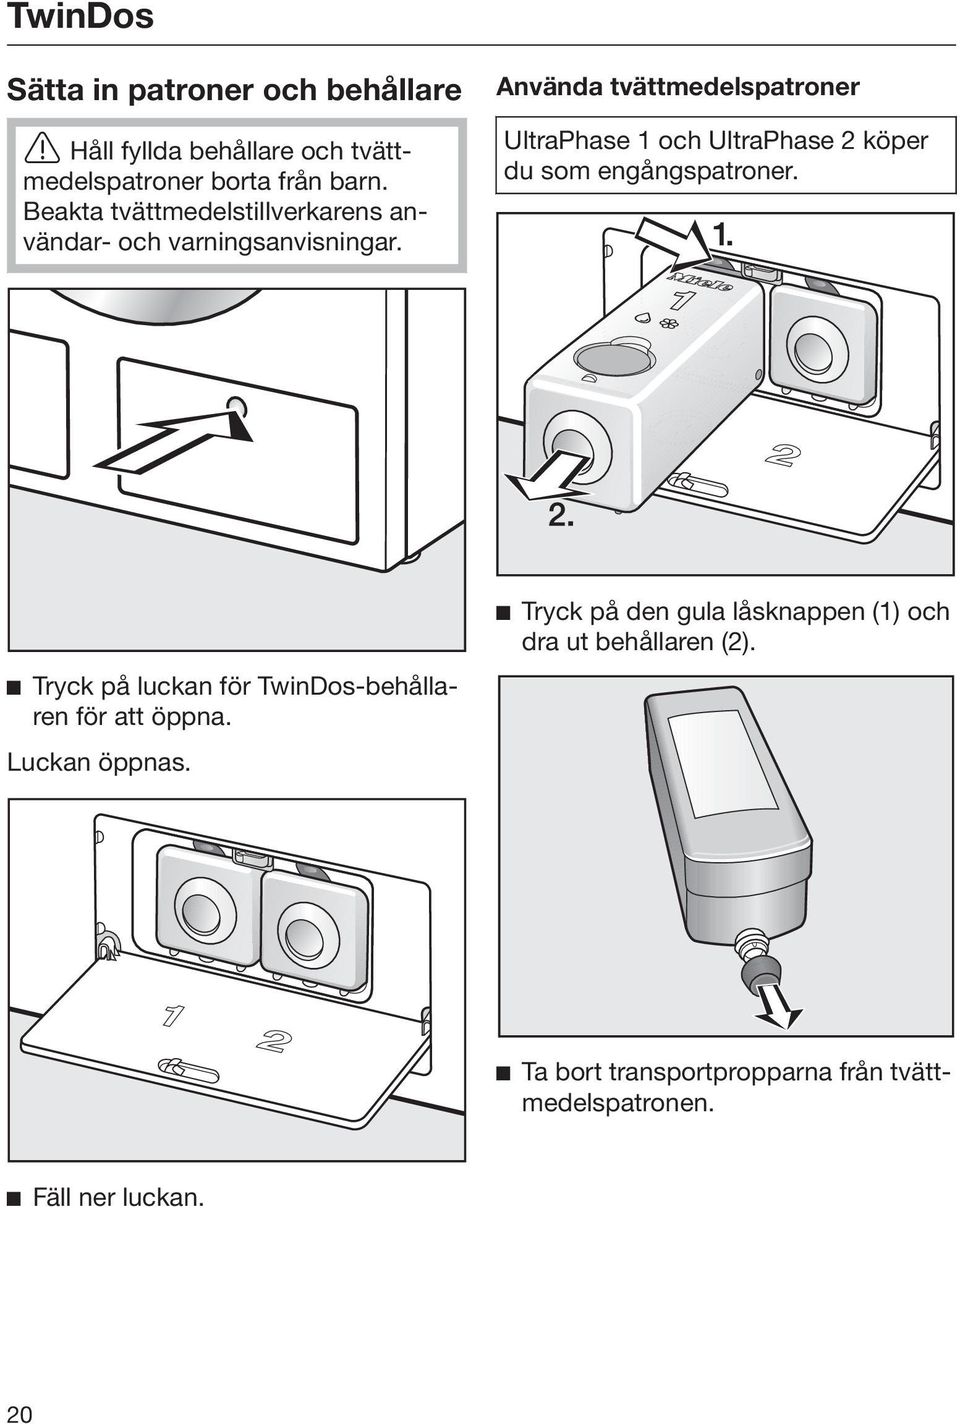 Använda tvättmedelspatroner UltraPhase 1 och UltraPhase 2 köper du som engångspatroner.